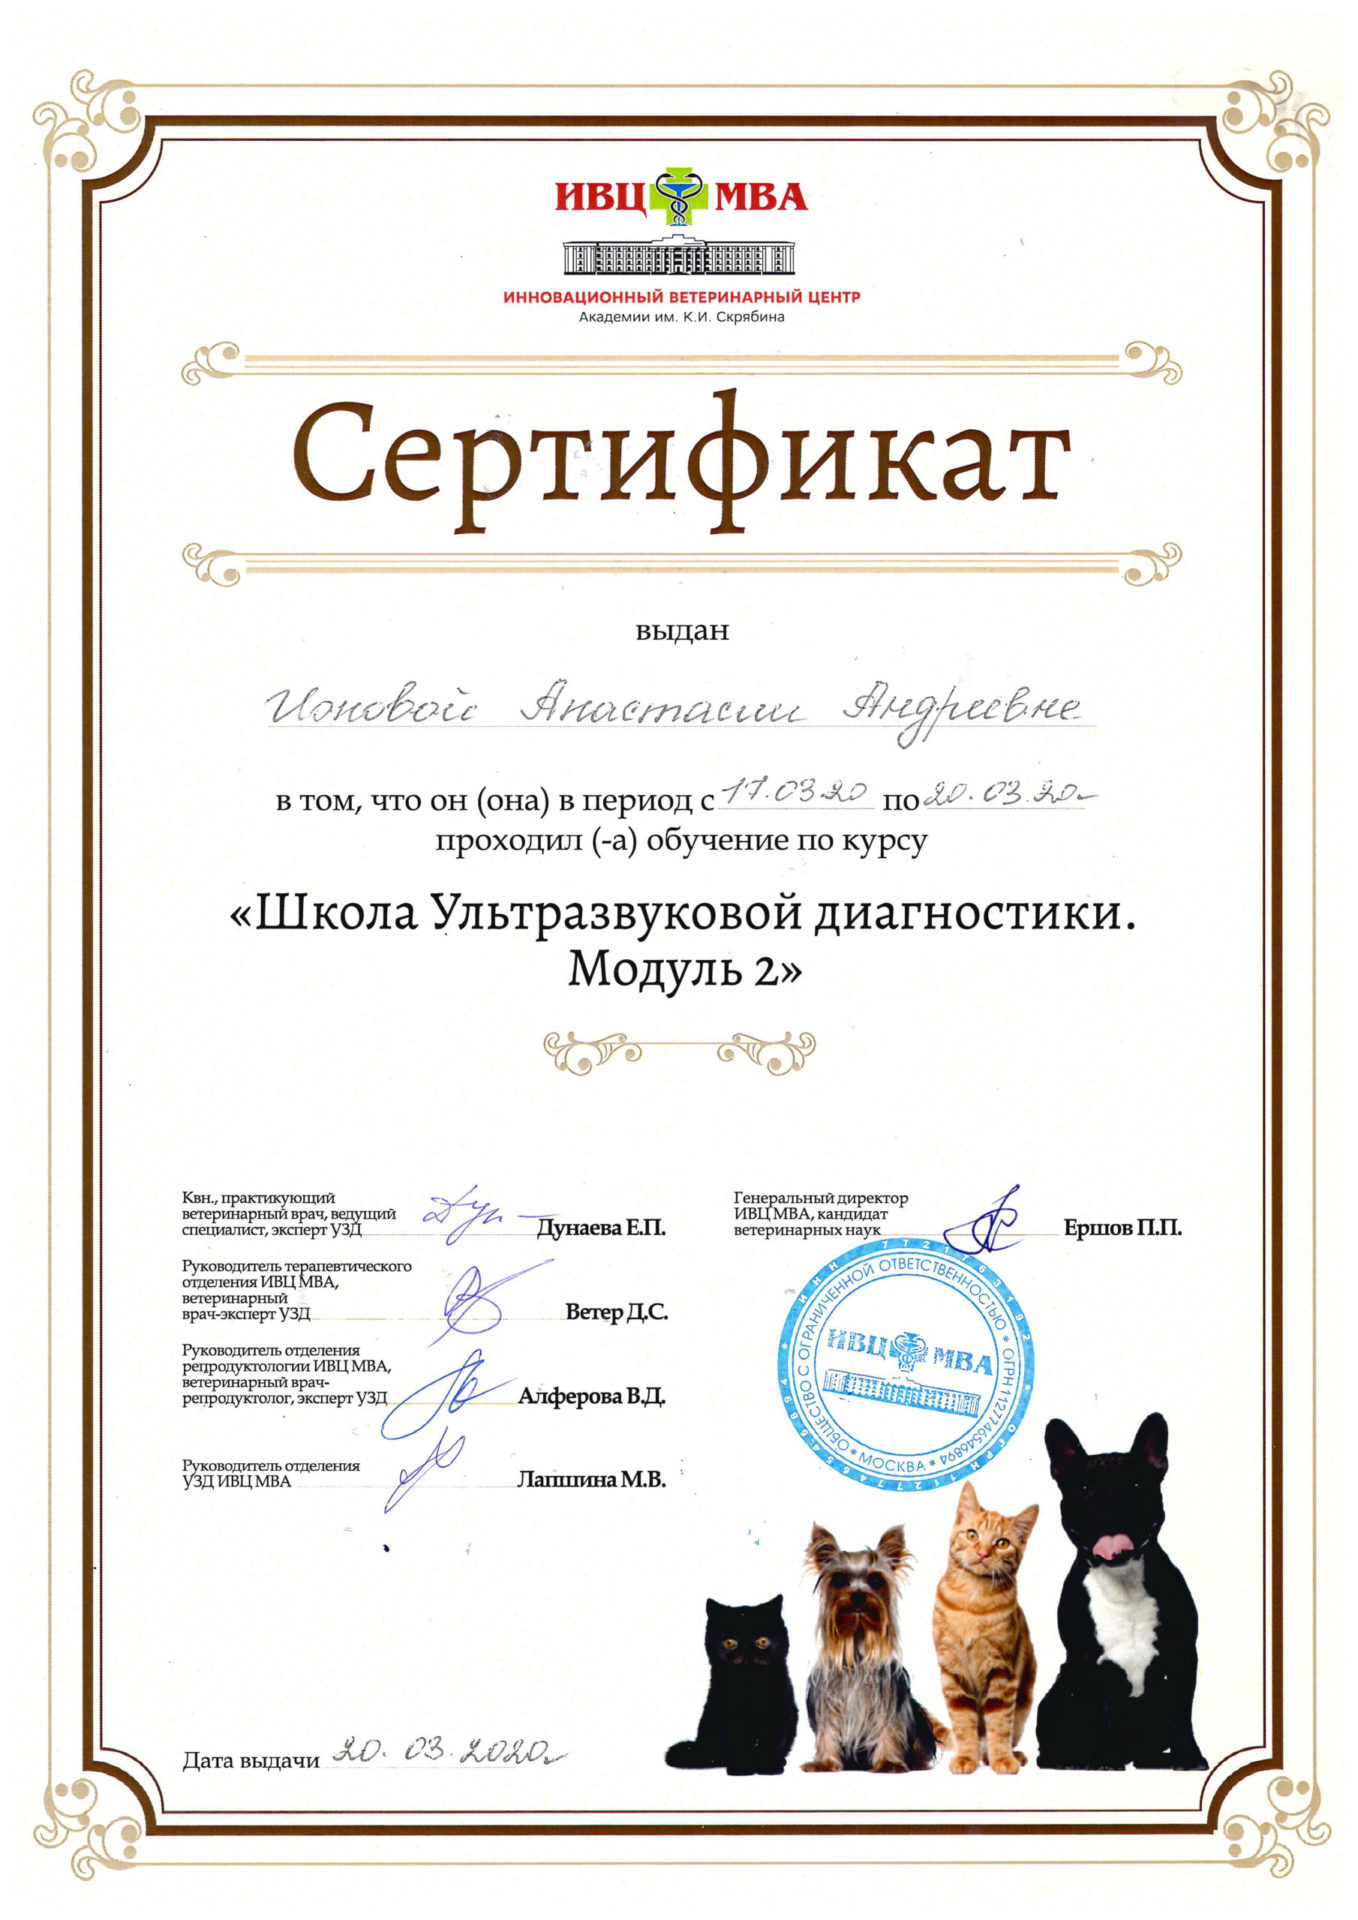 Сертификат Ионовой Анастасии Андреевны